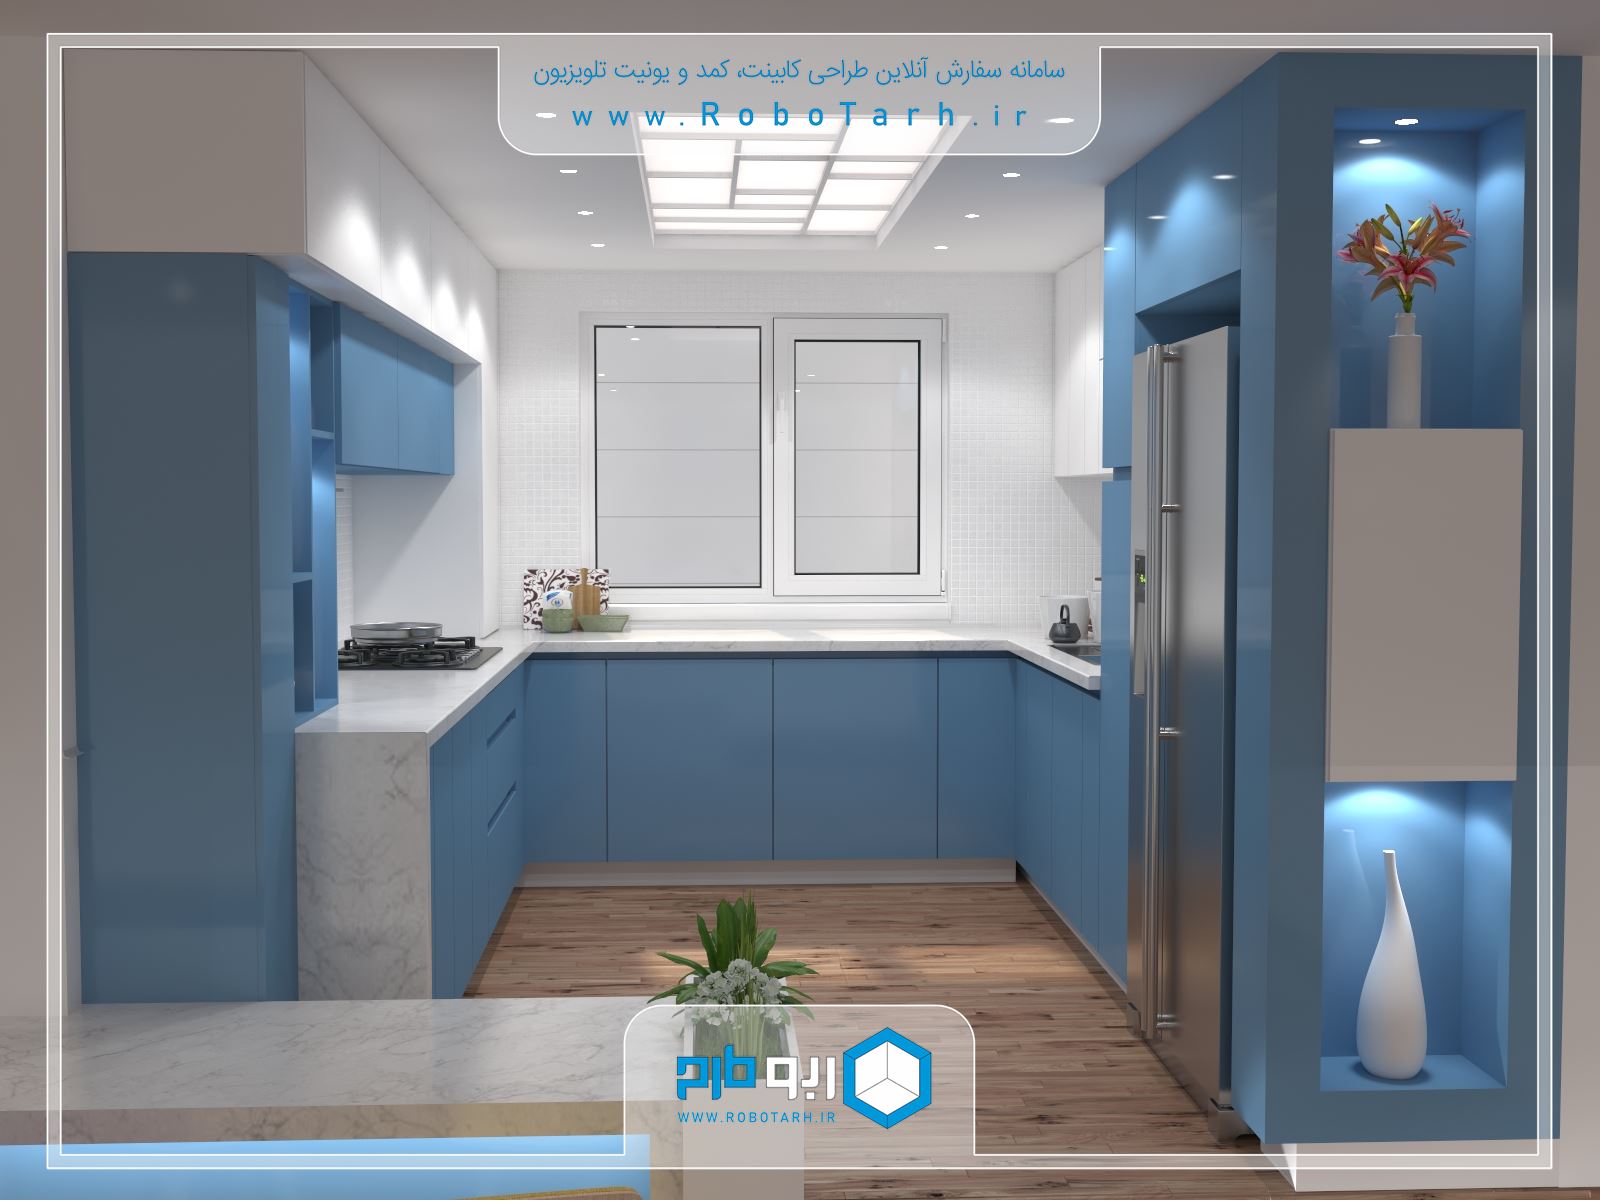 طراحی کابینت آشپزخانه مدرن به رنگ آبی و سفید